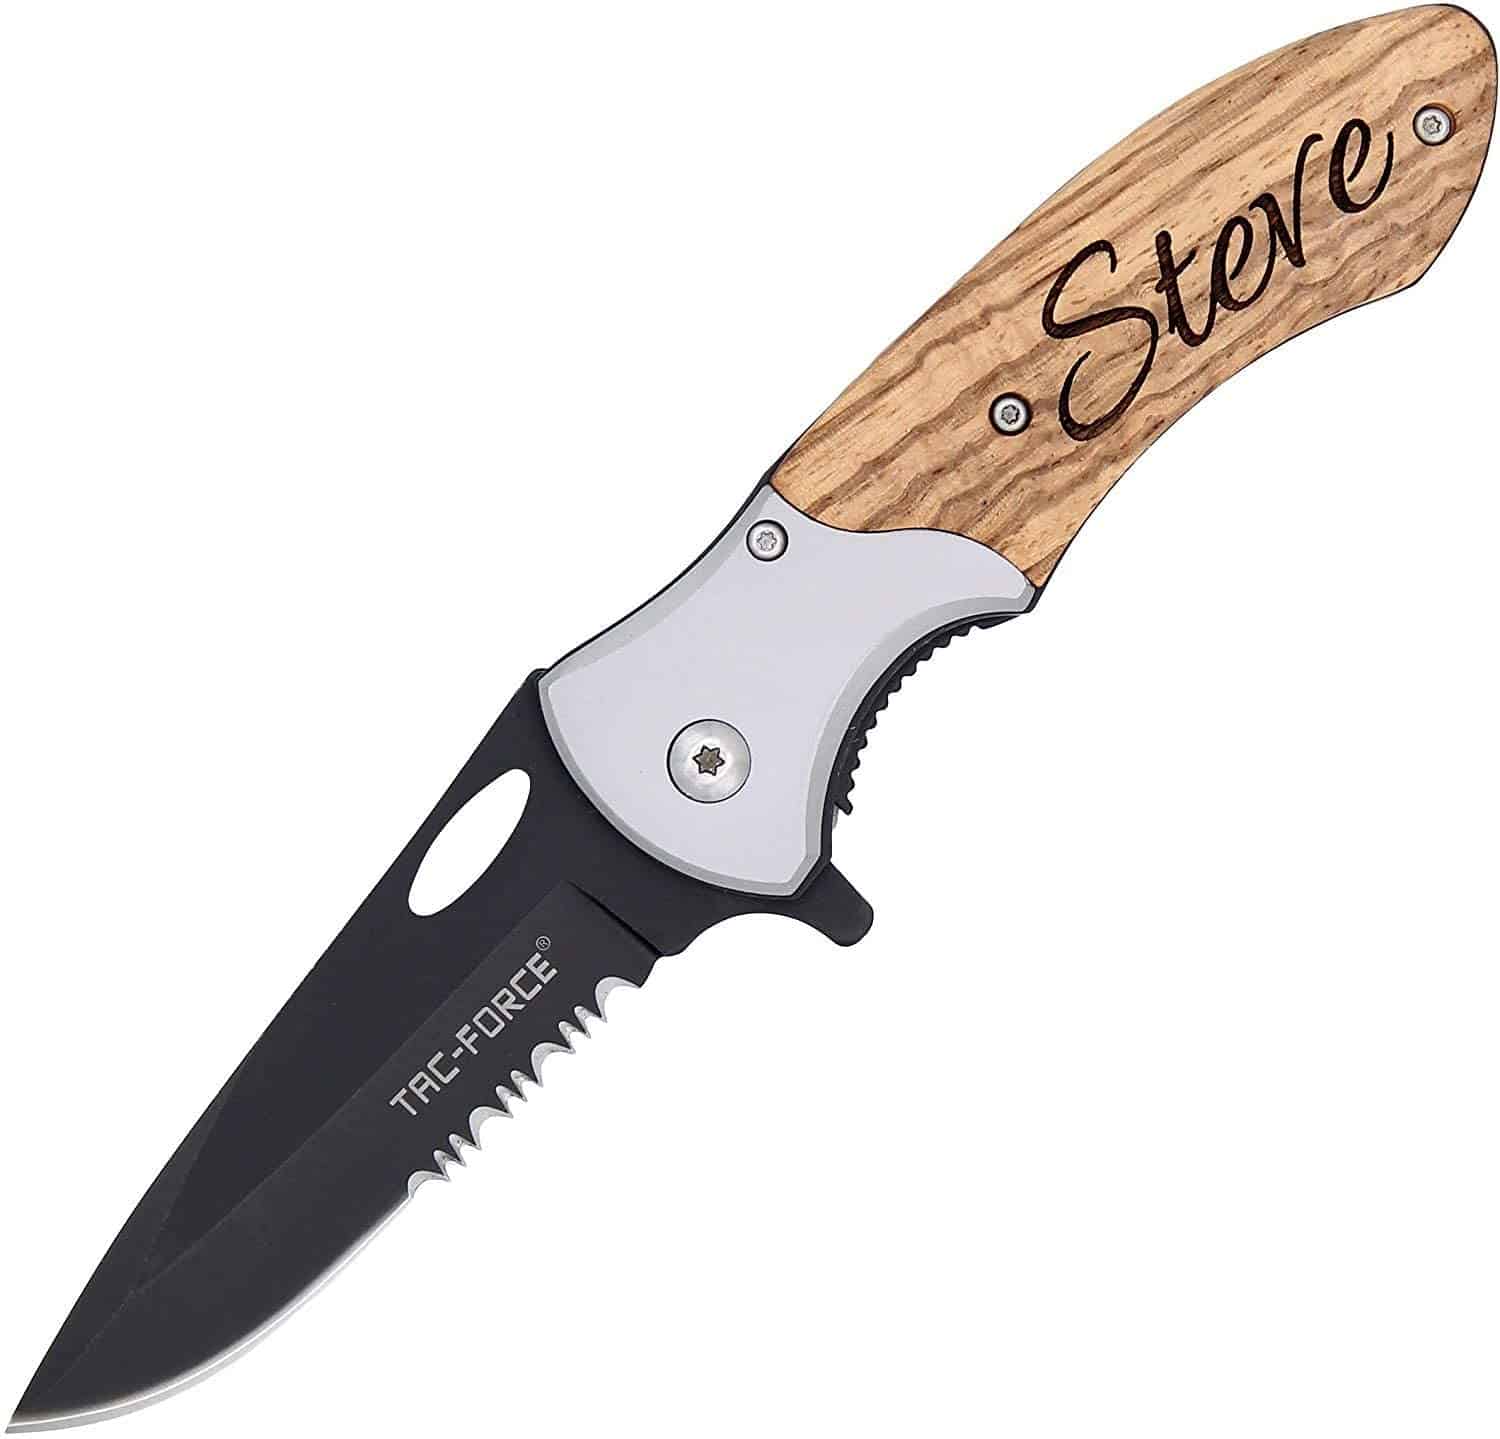 6 Best Pocket Knife Reviews: The Latest on Super Sharp Pocket Knives